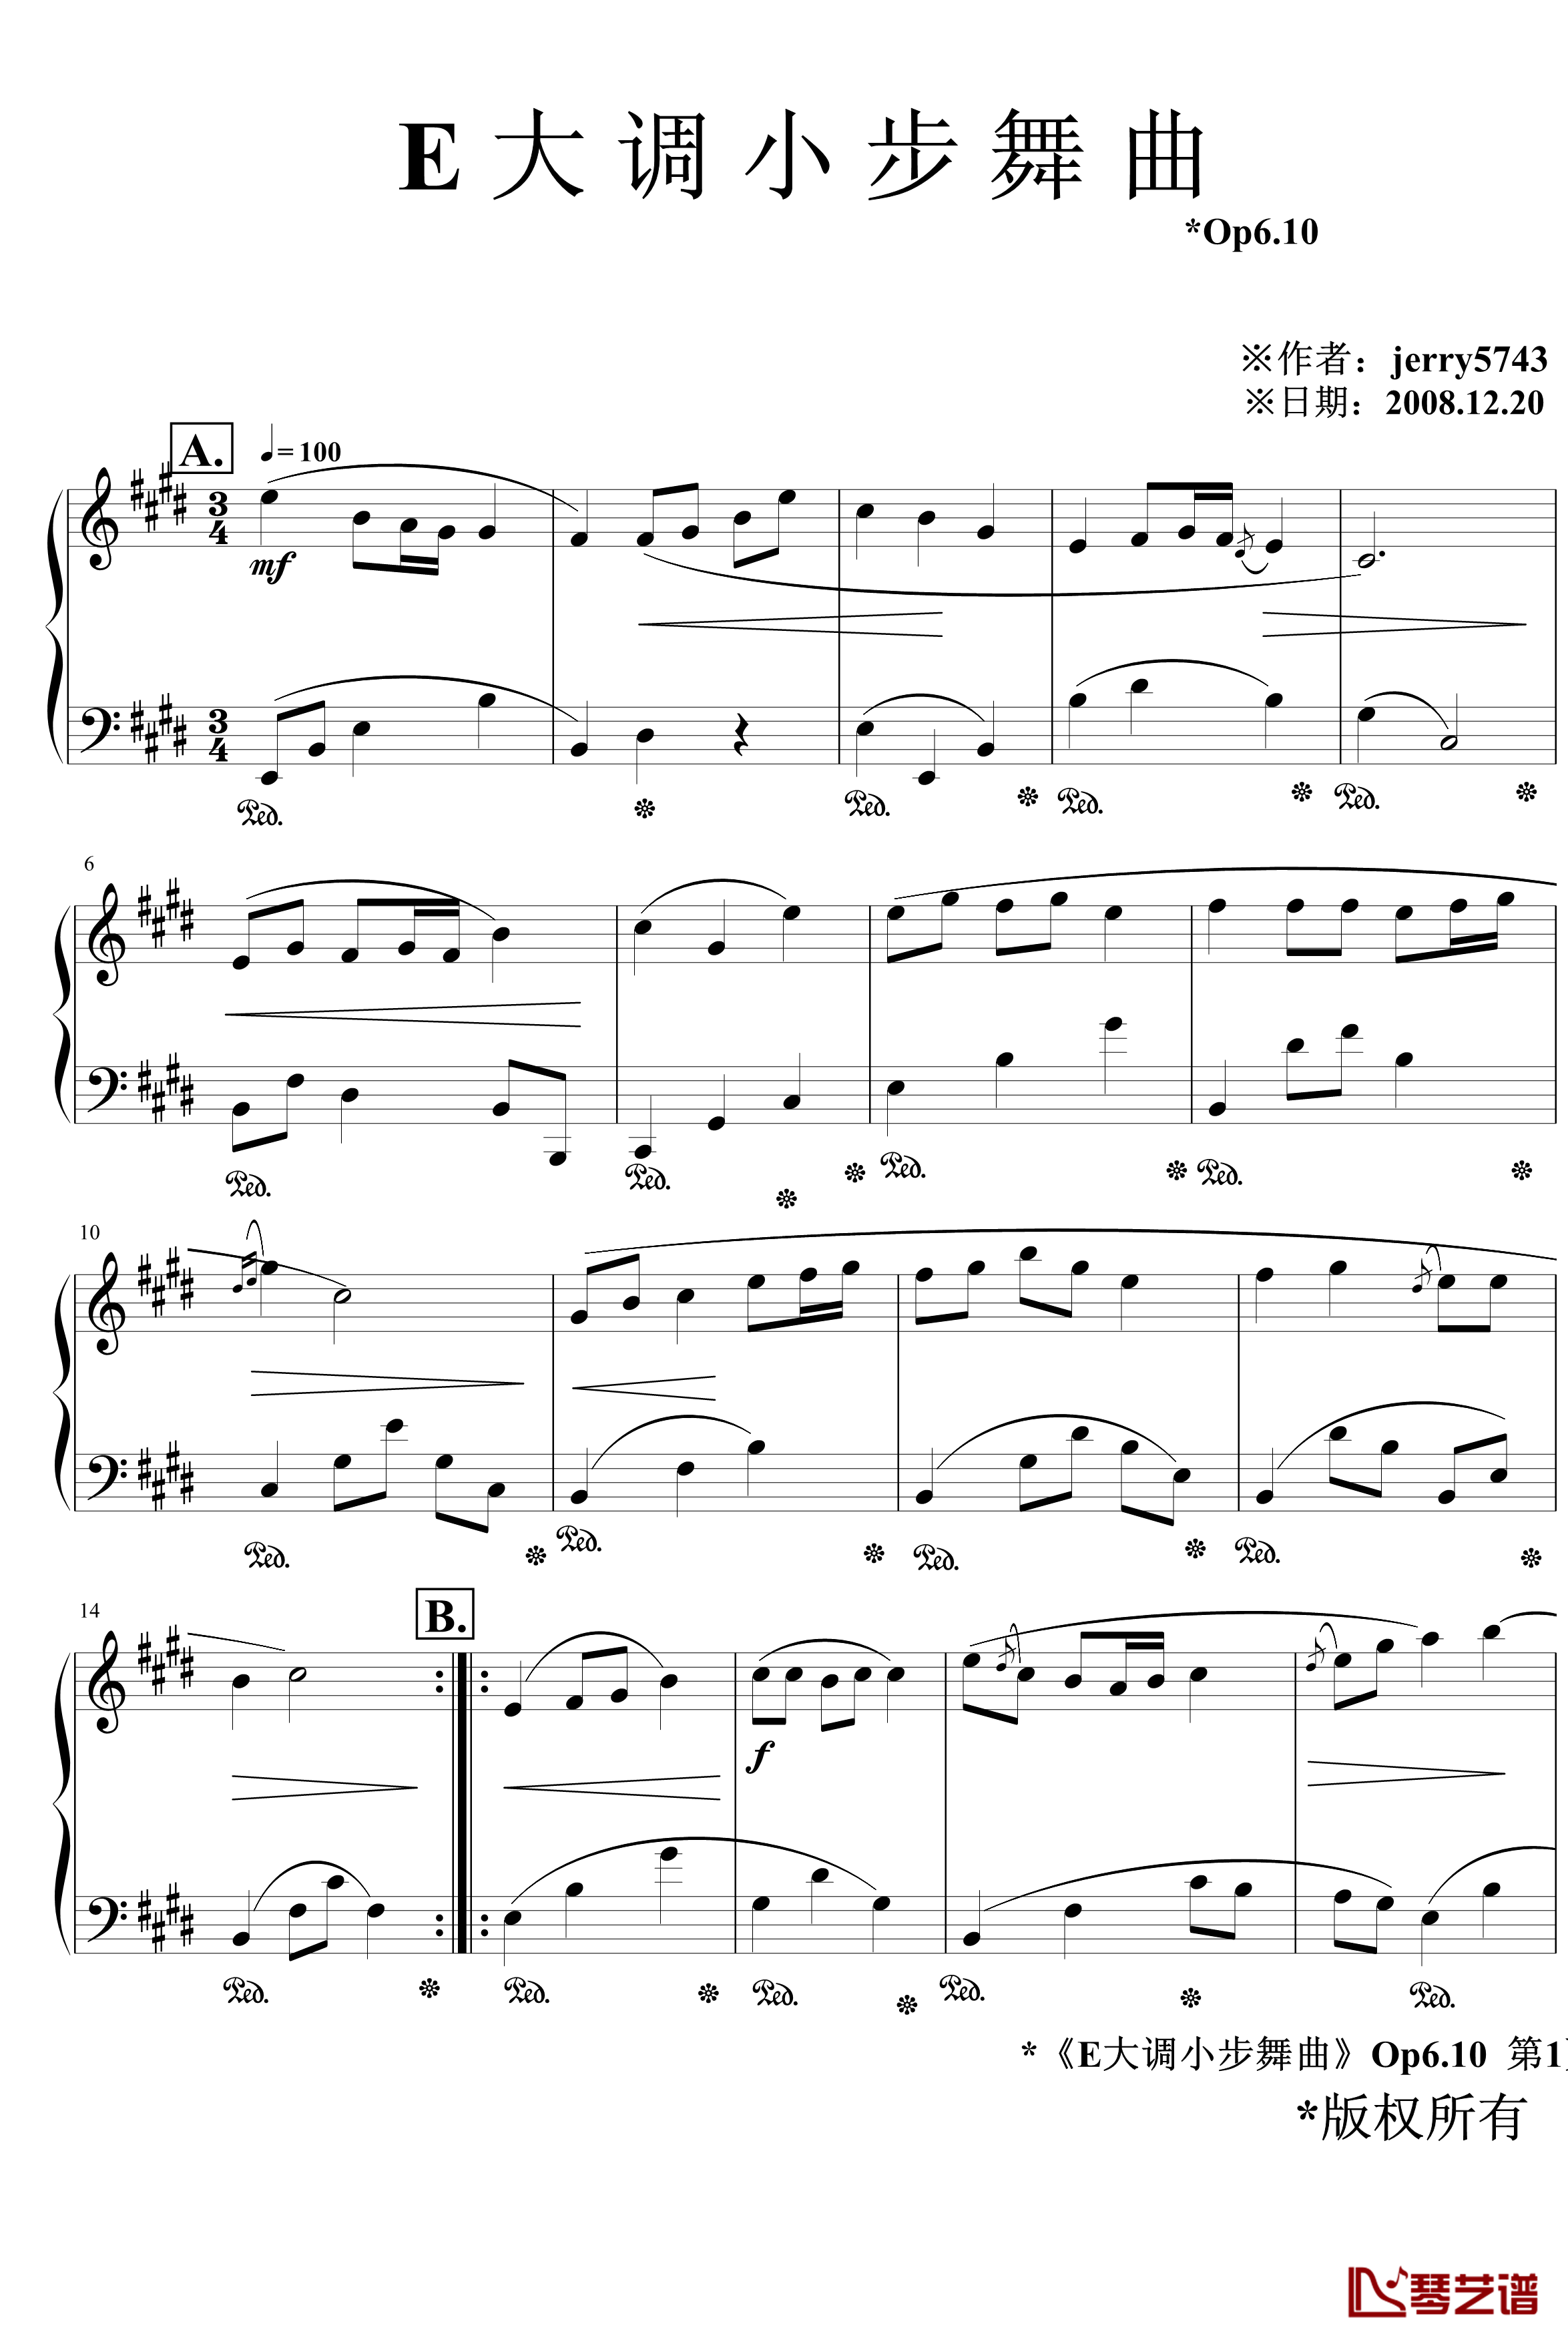 E大调小步舞曲Op6.10钢琴谱-jerry57431